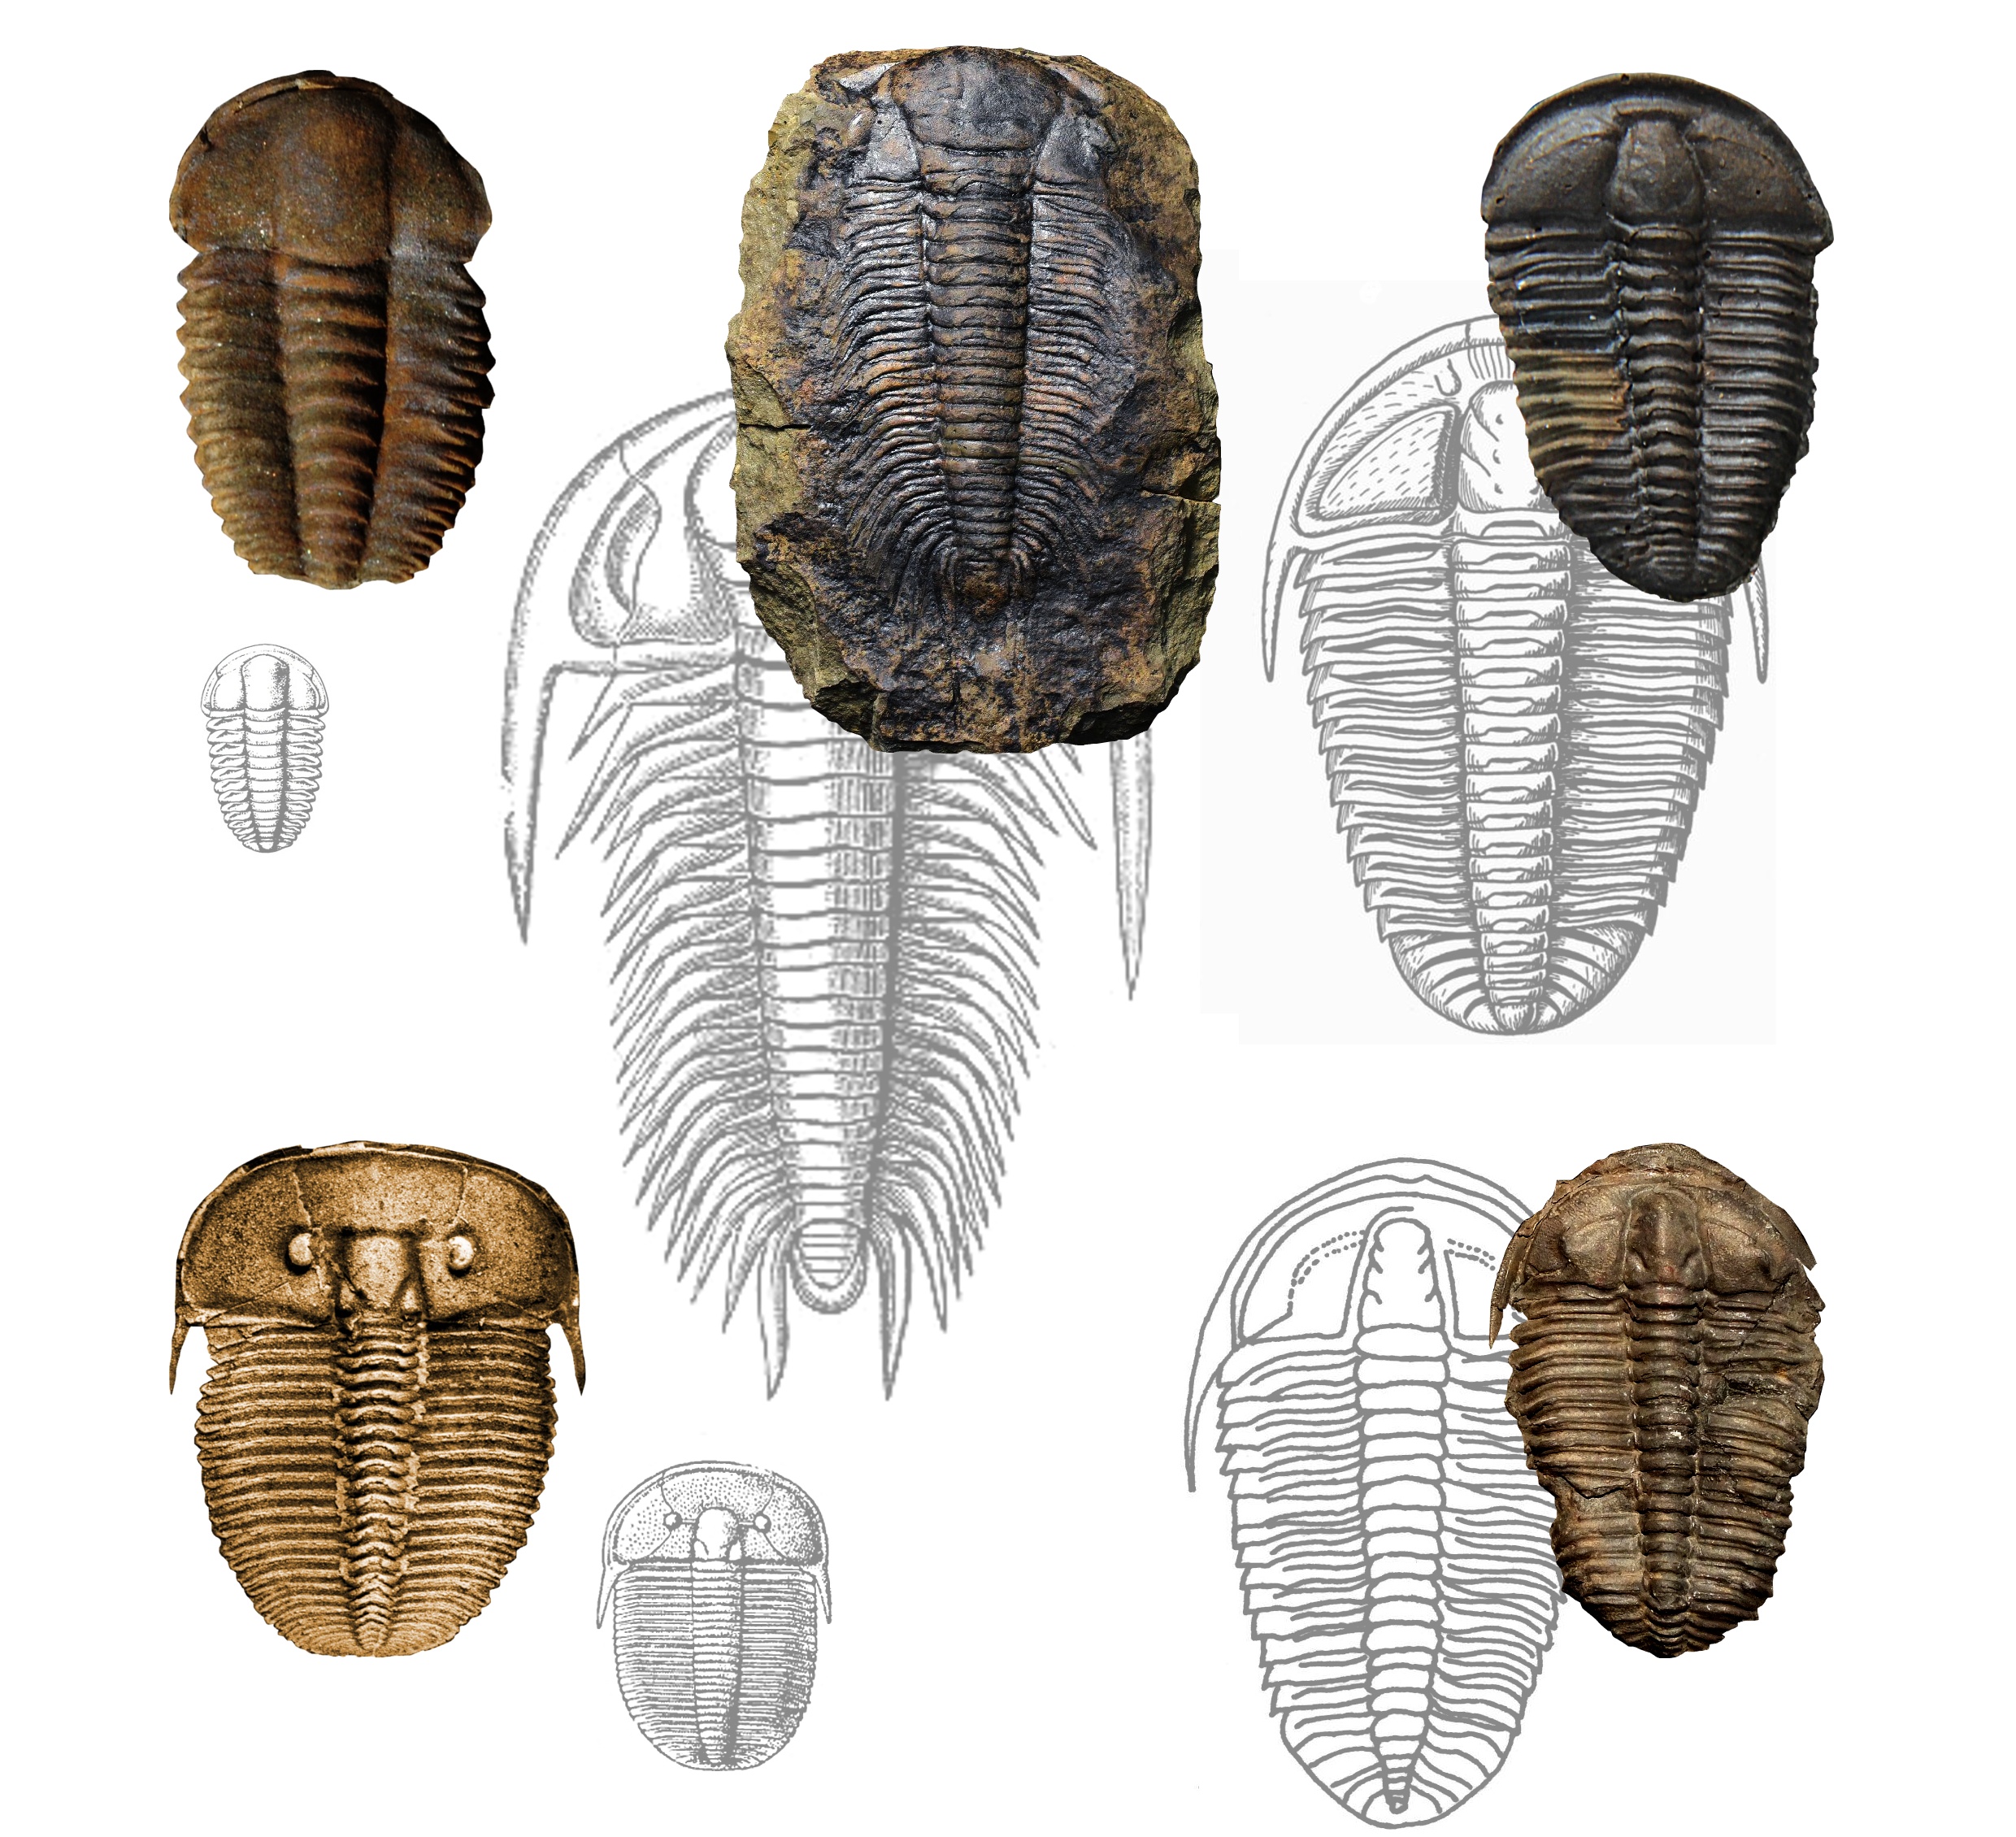 Typičtí čeští trilobiti (šedě vyobrazena skutečná velikost) Ellipsocephalus hoffi